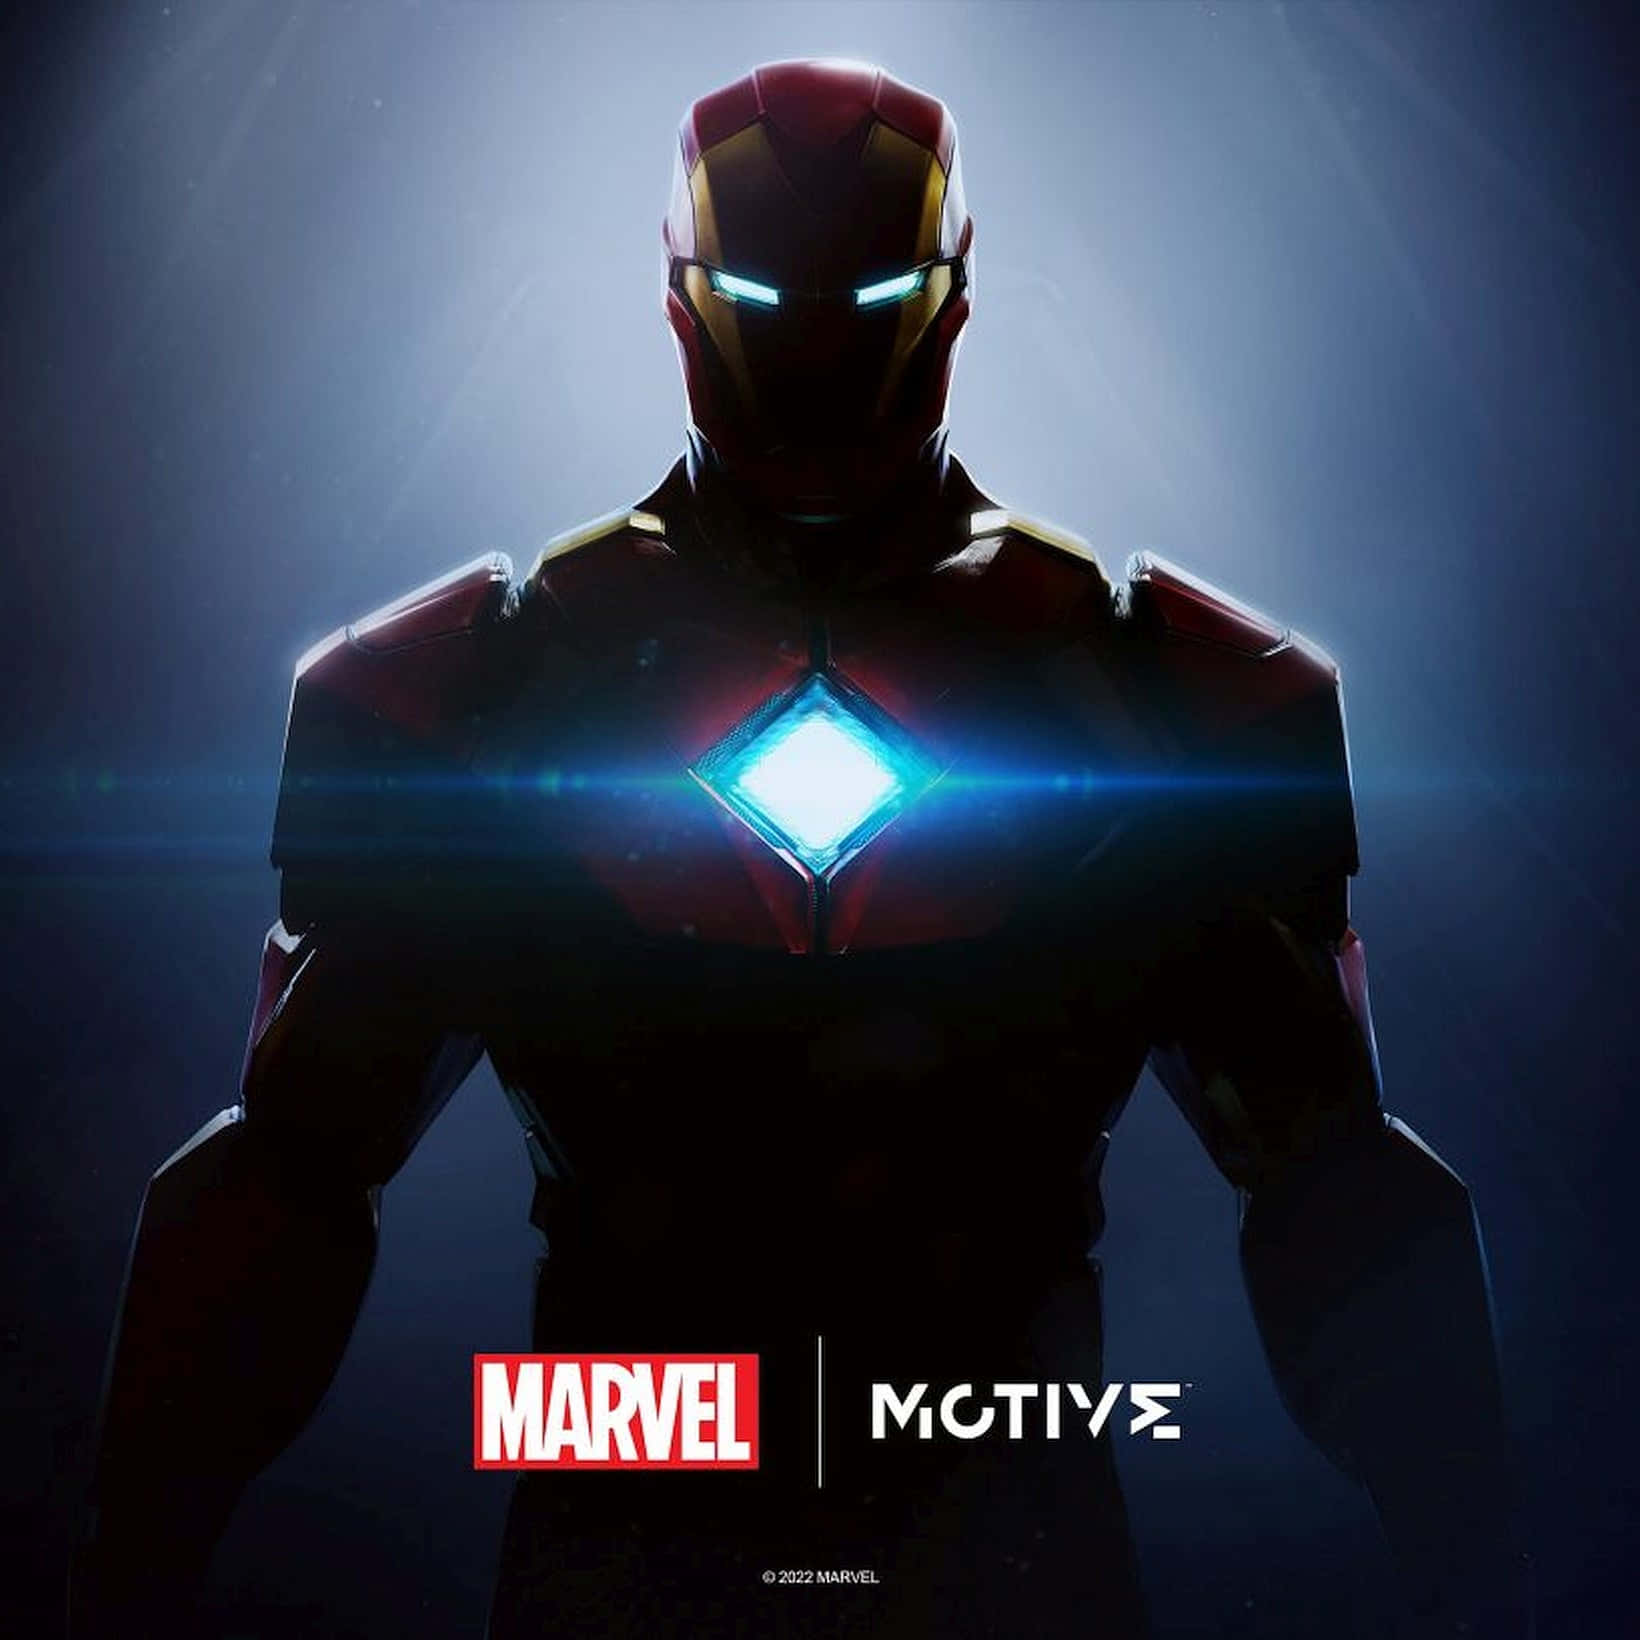 Imagendel Reactor Arc Brillante De Iron Man En La Oscuridad.